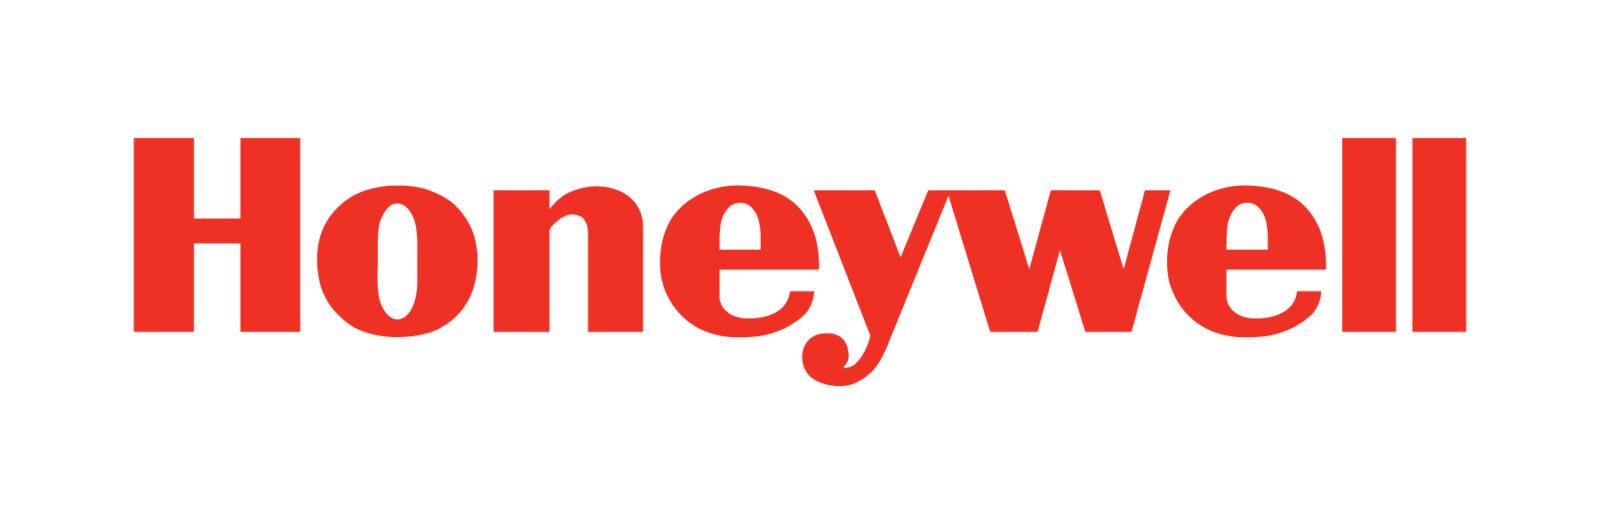 Honeywell Safety Products Deutschland GmbH & Co. KG